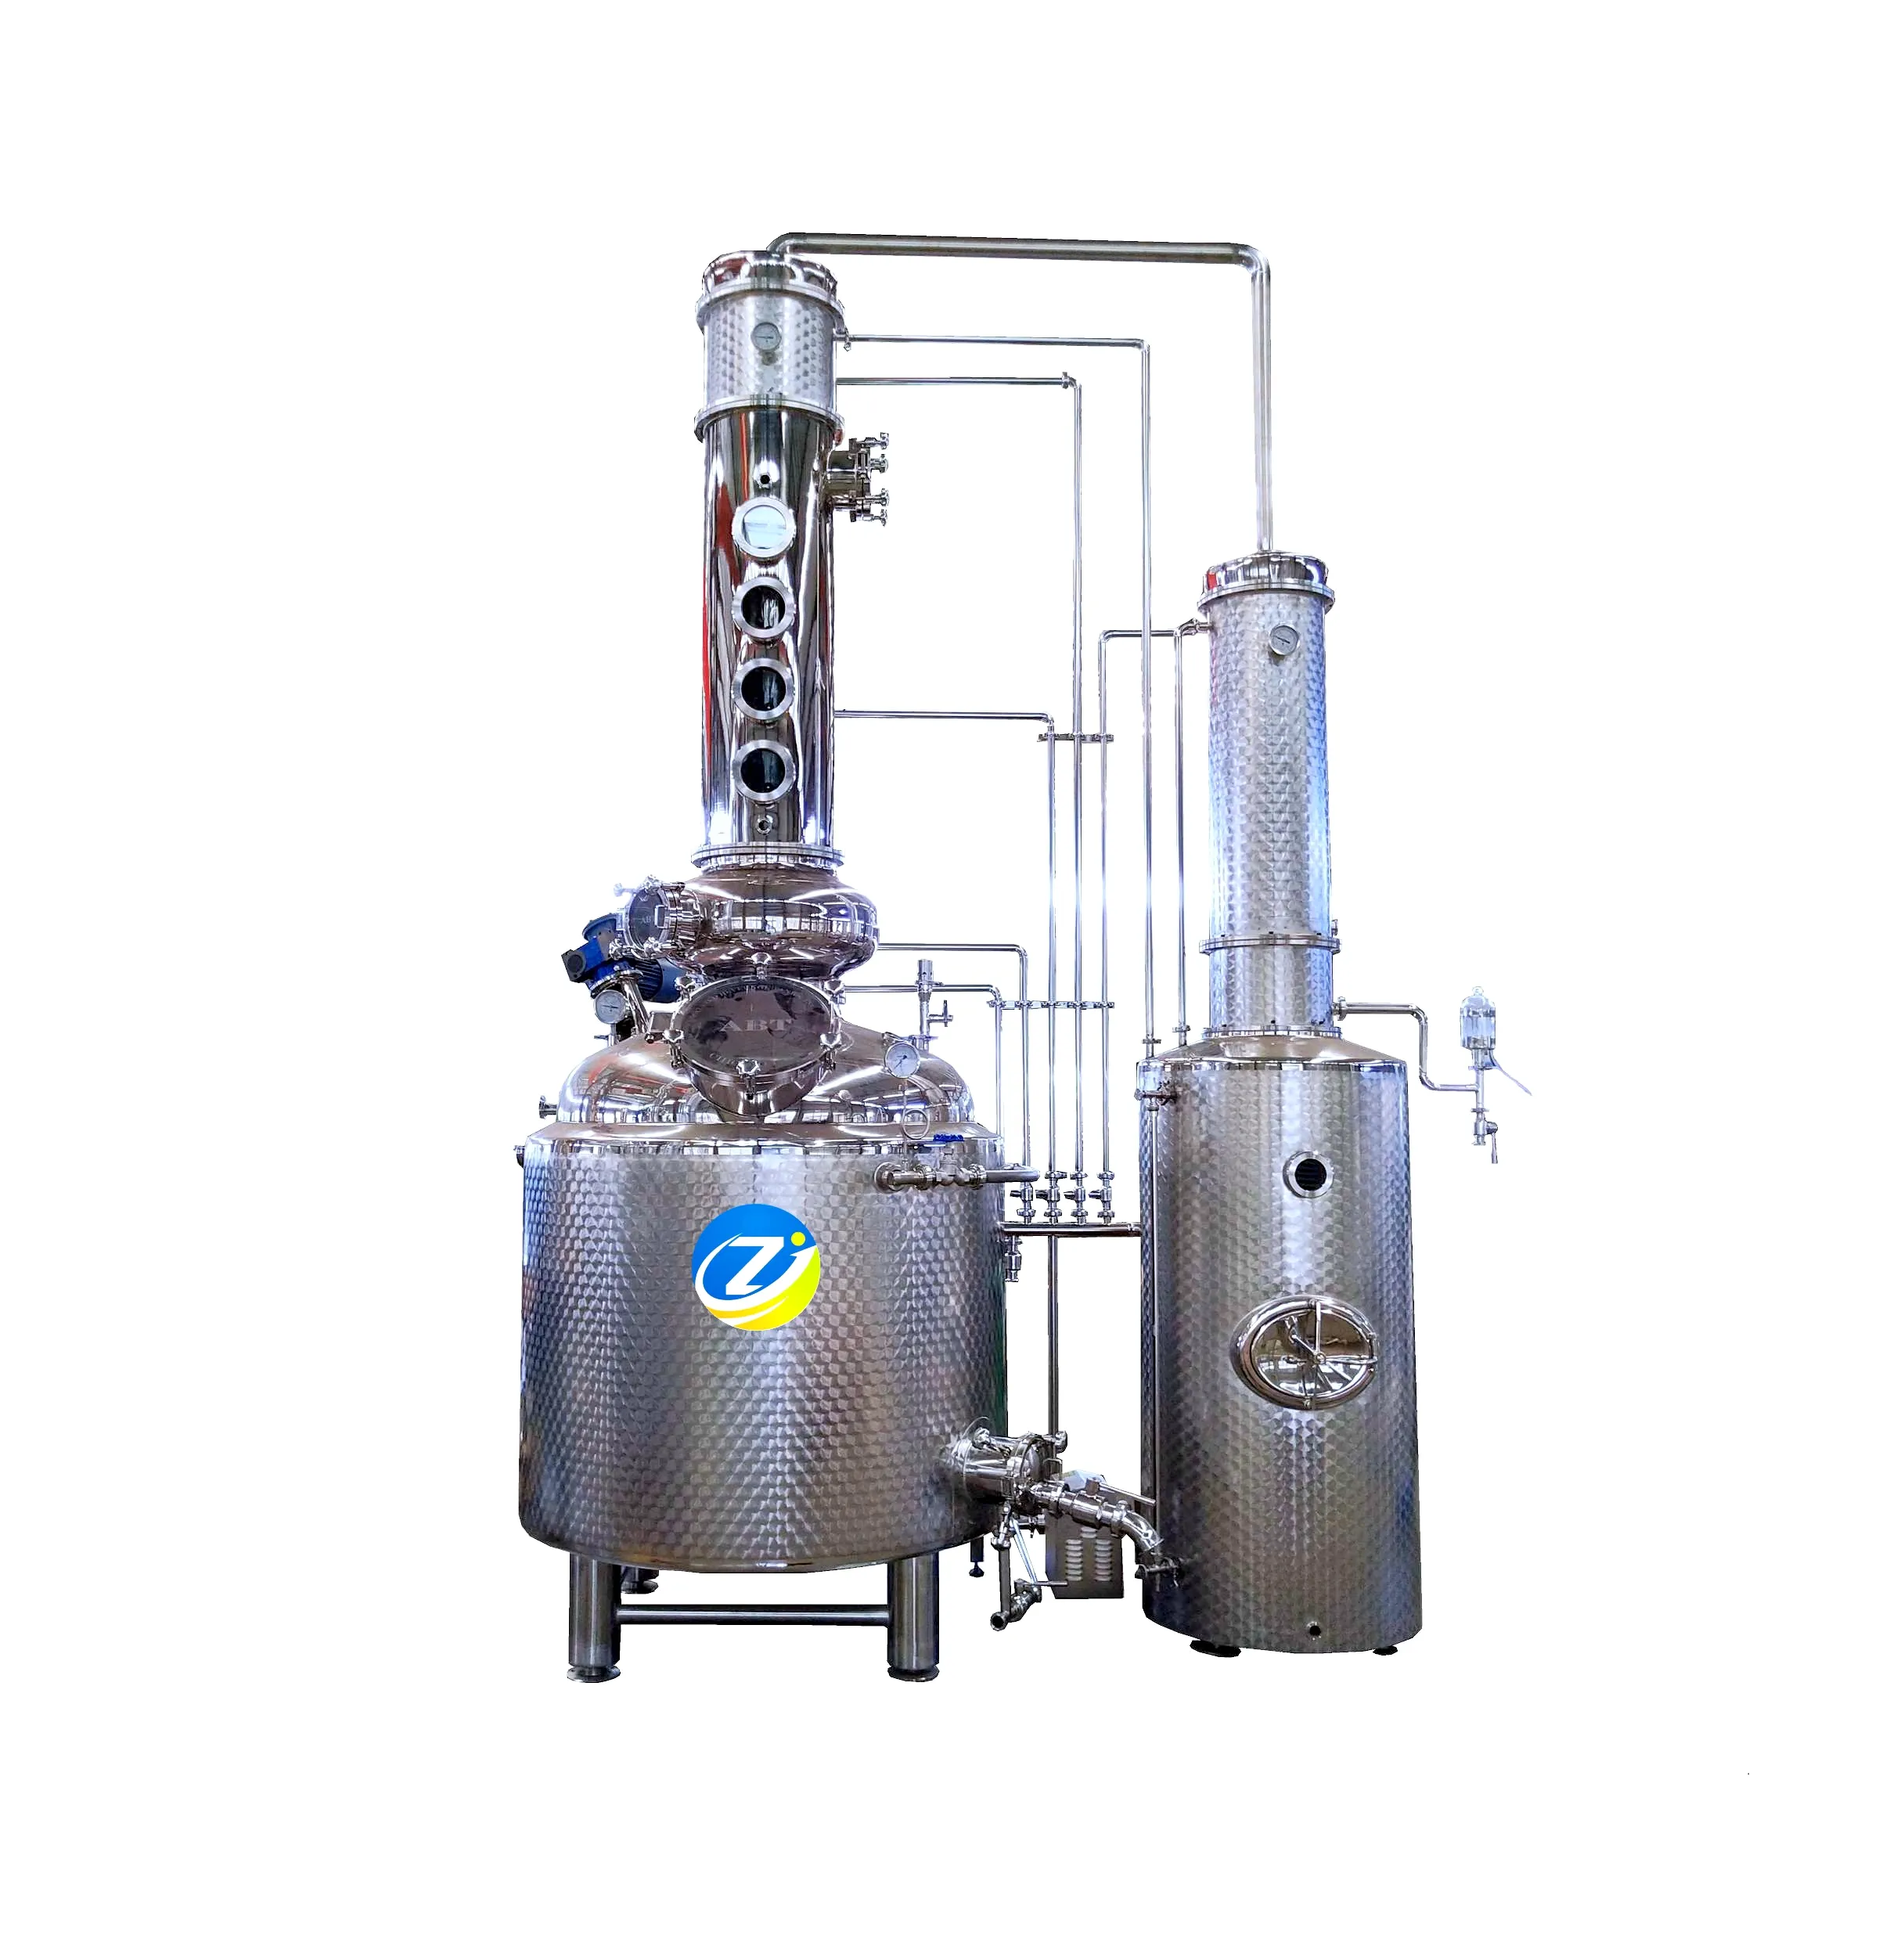 ZJ 500L Pot Stainless Steel Still Fractional Distiller Alcohol Distilling Equipment Distillation Column For Industrial